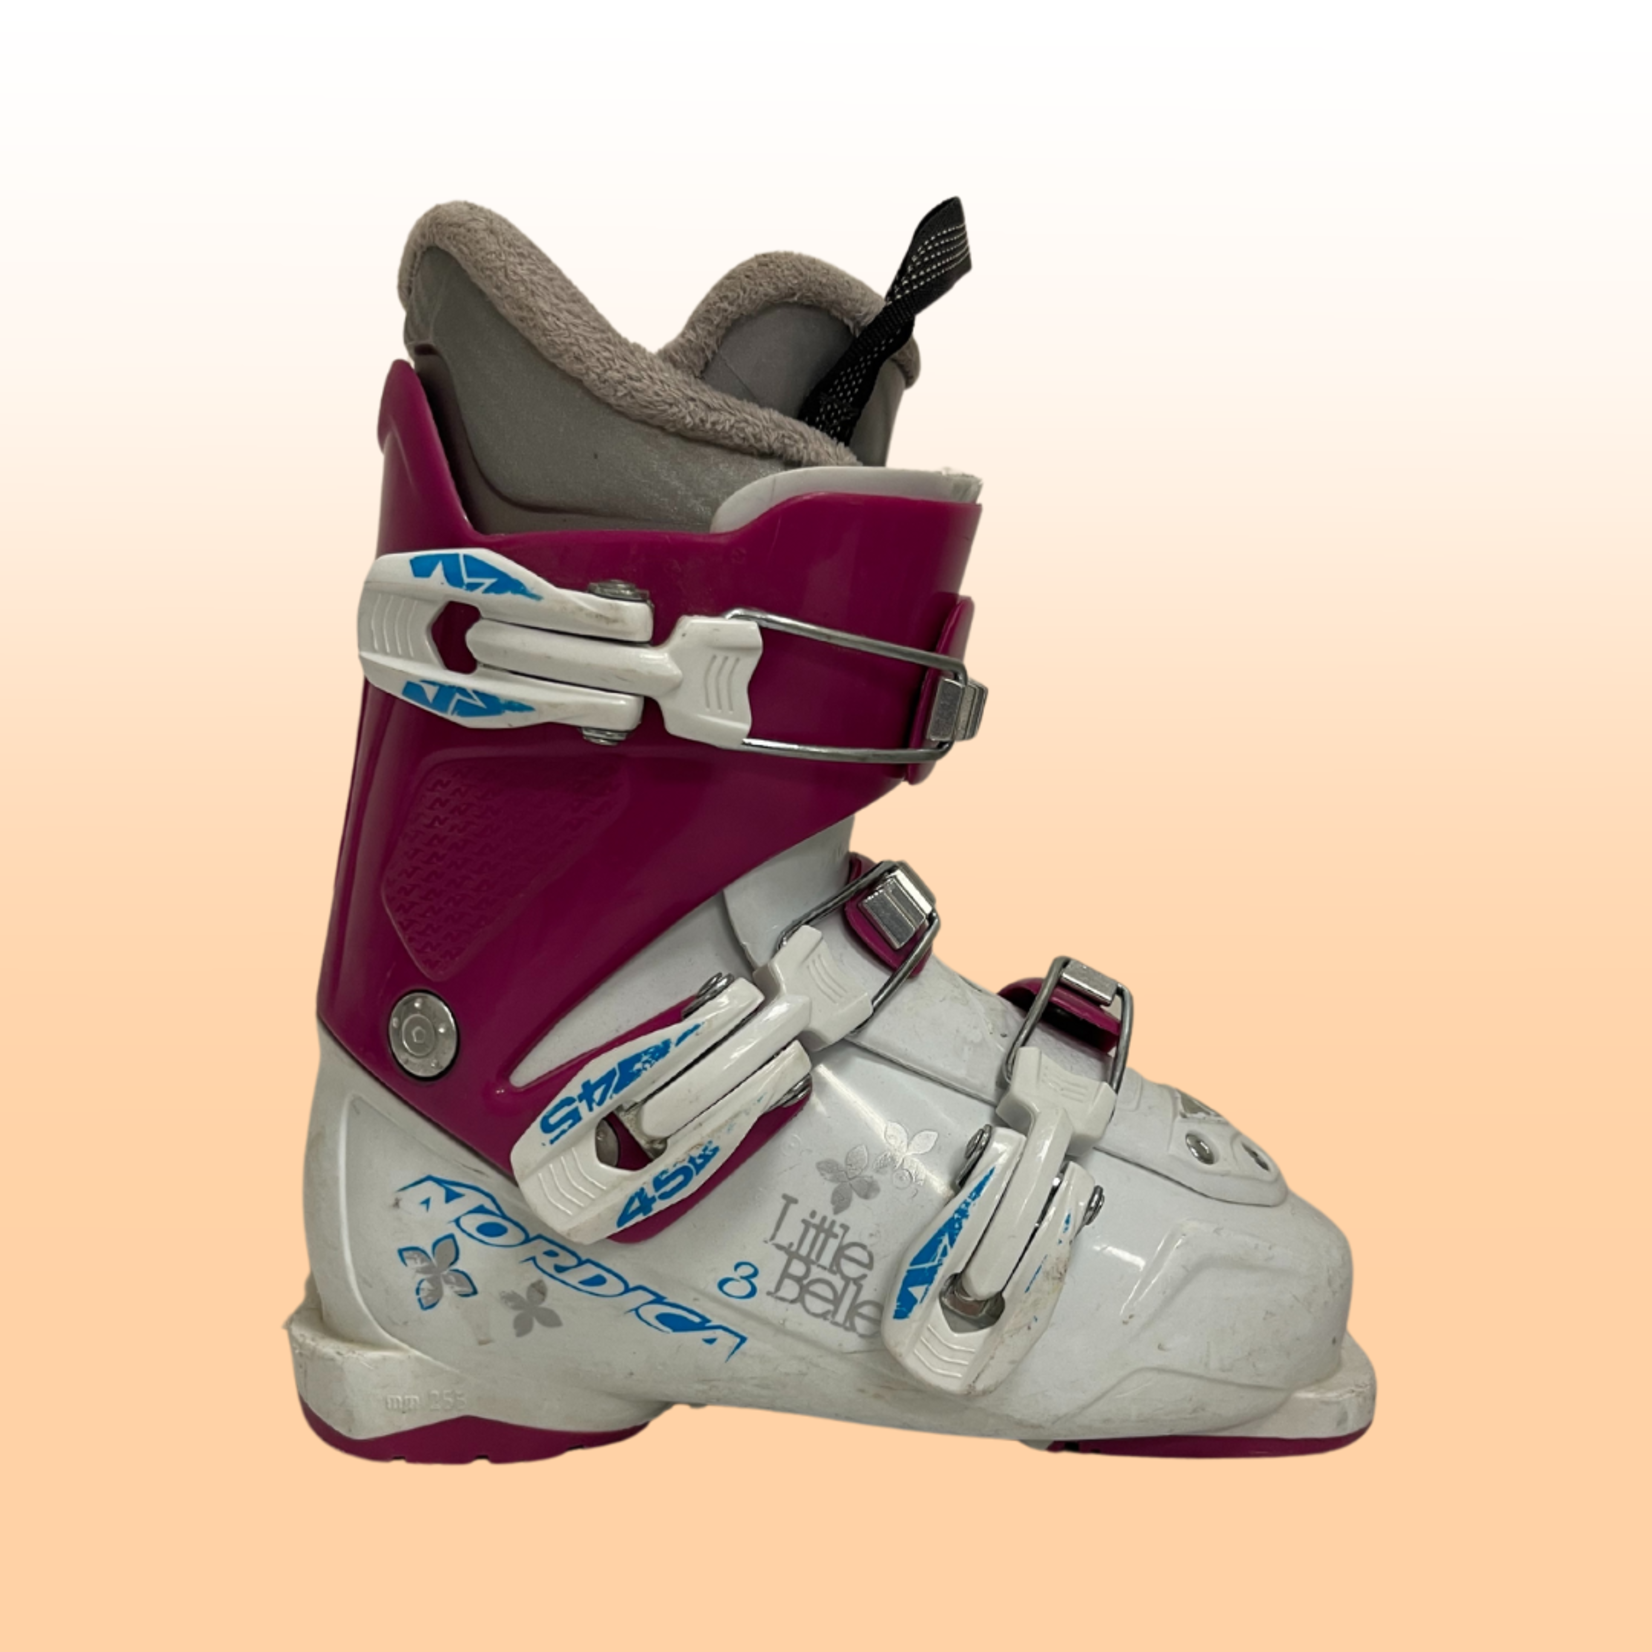 Nordica Nordica Little Belle 3 Ki's Ski Boots, Size 20/21.5